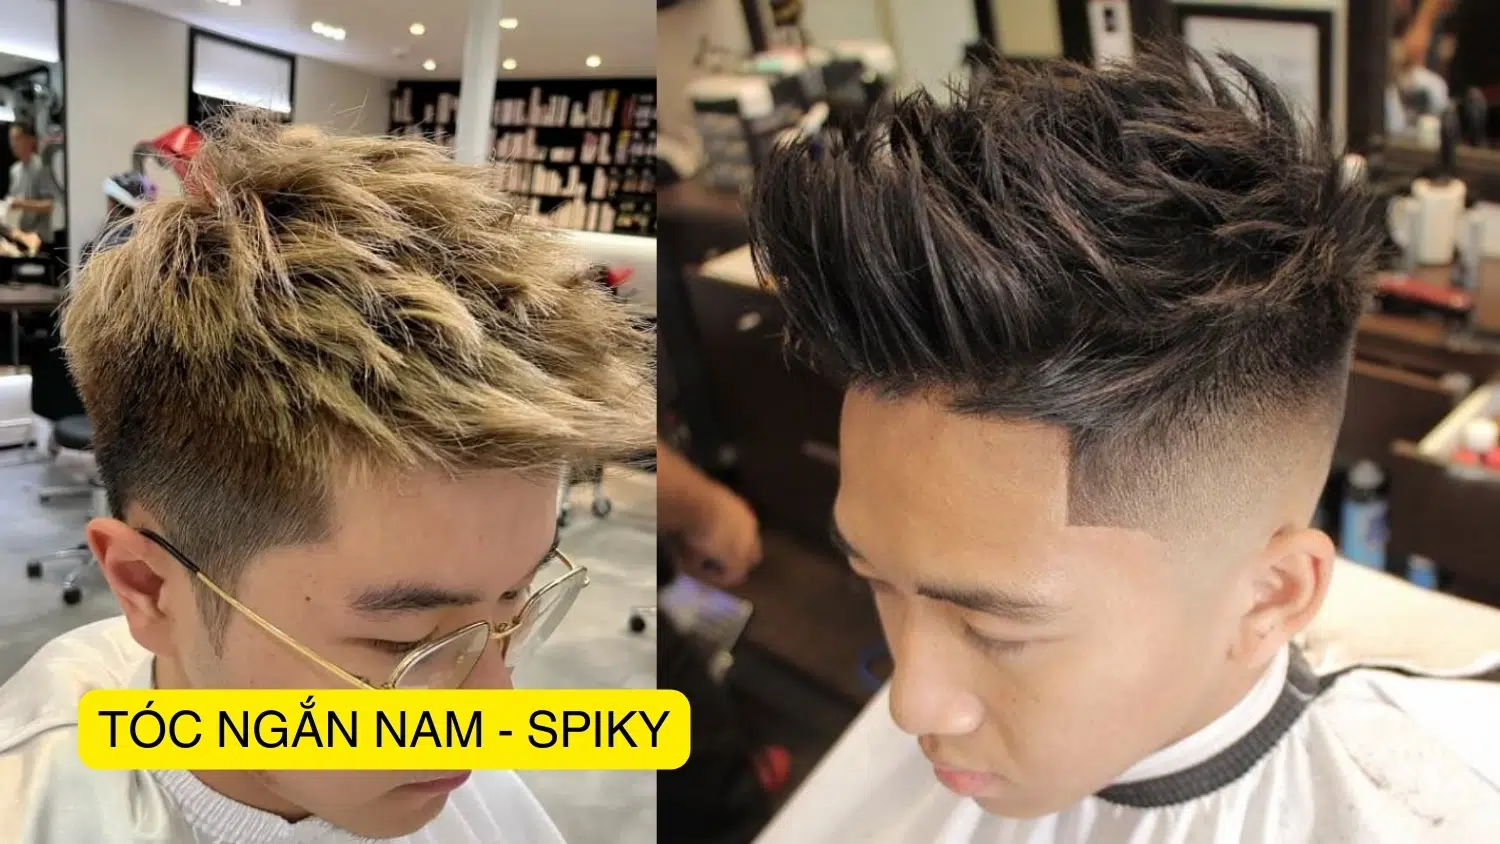 TƯ VẤN KIỂU TÓC THEO KHUÔN MẶT – Suplo Hair Salon - Mỹ Phẩm Nam Chính Hãng,  Giá tốt nhất thị trường